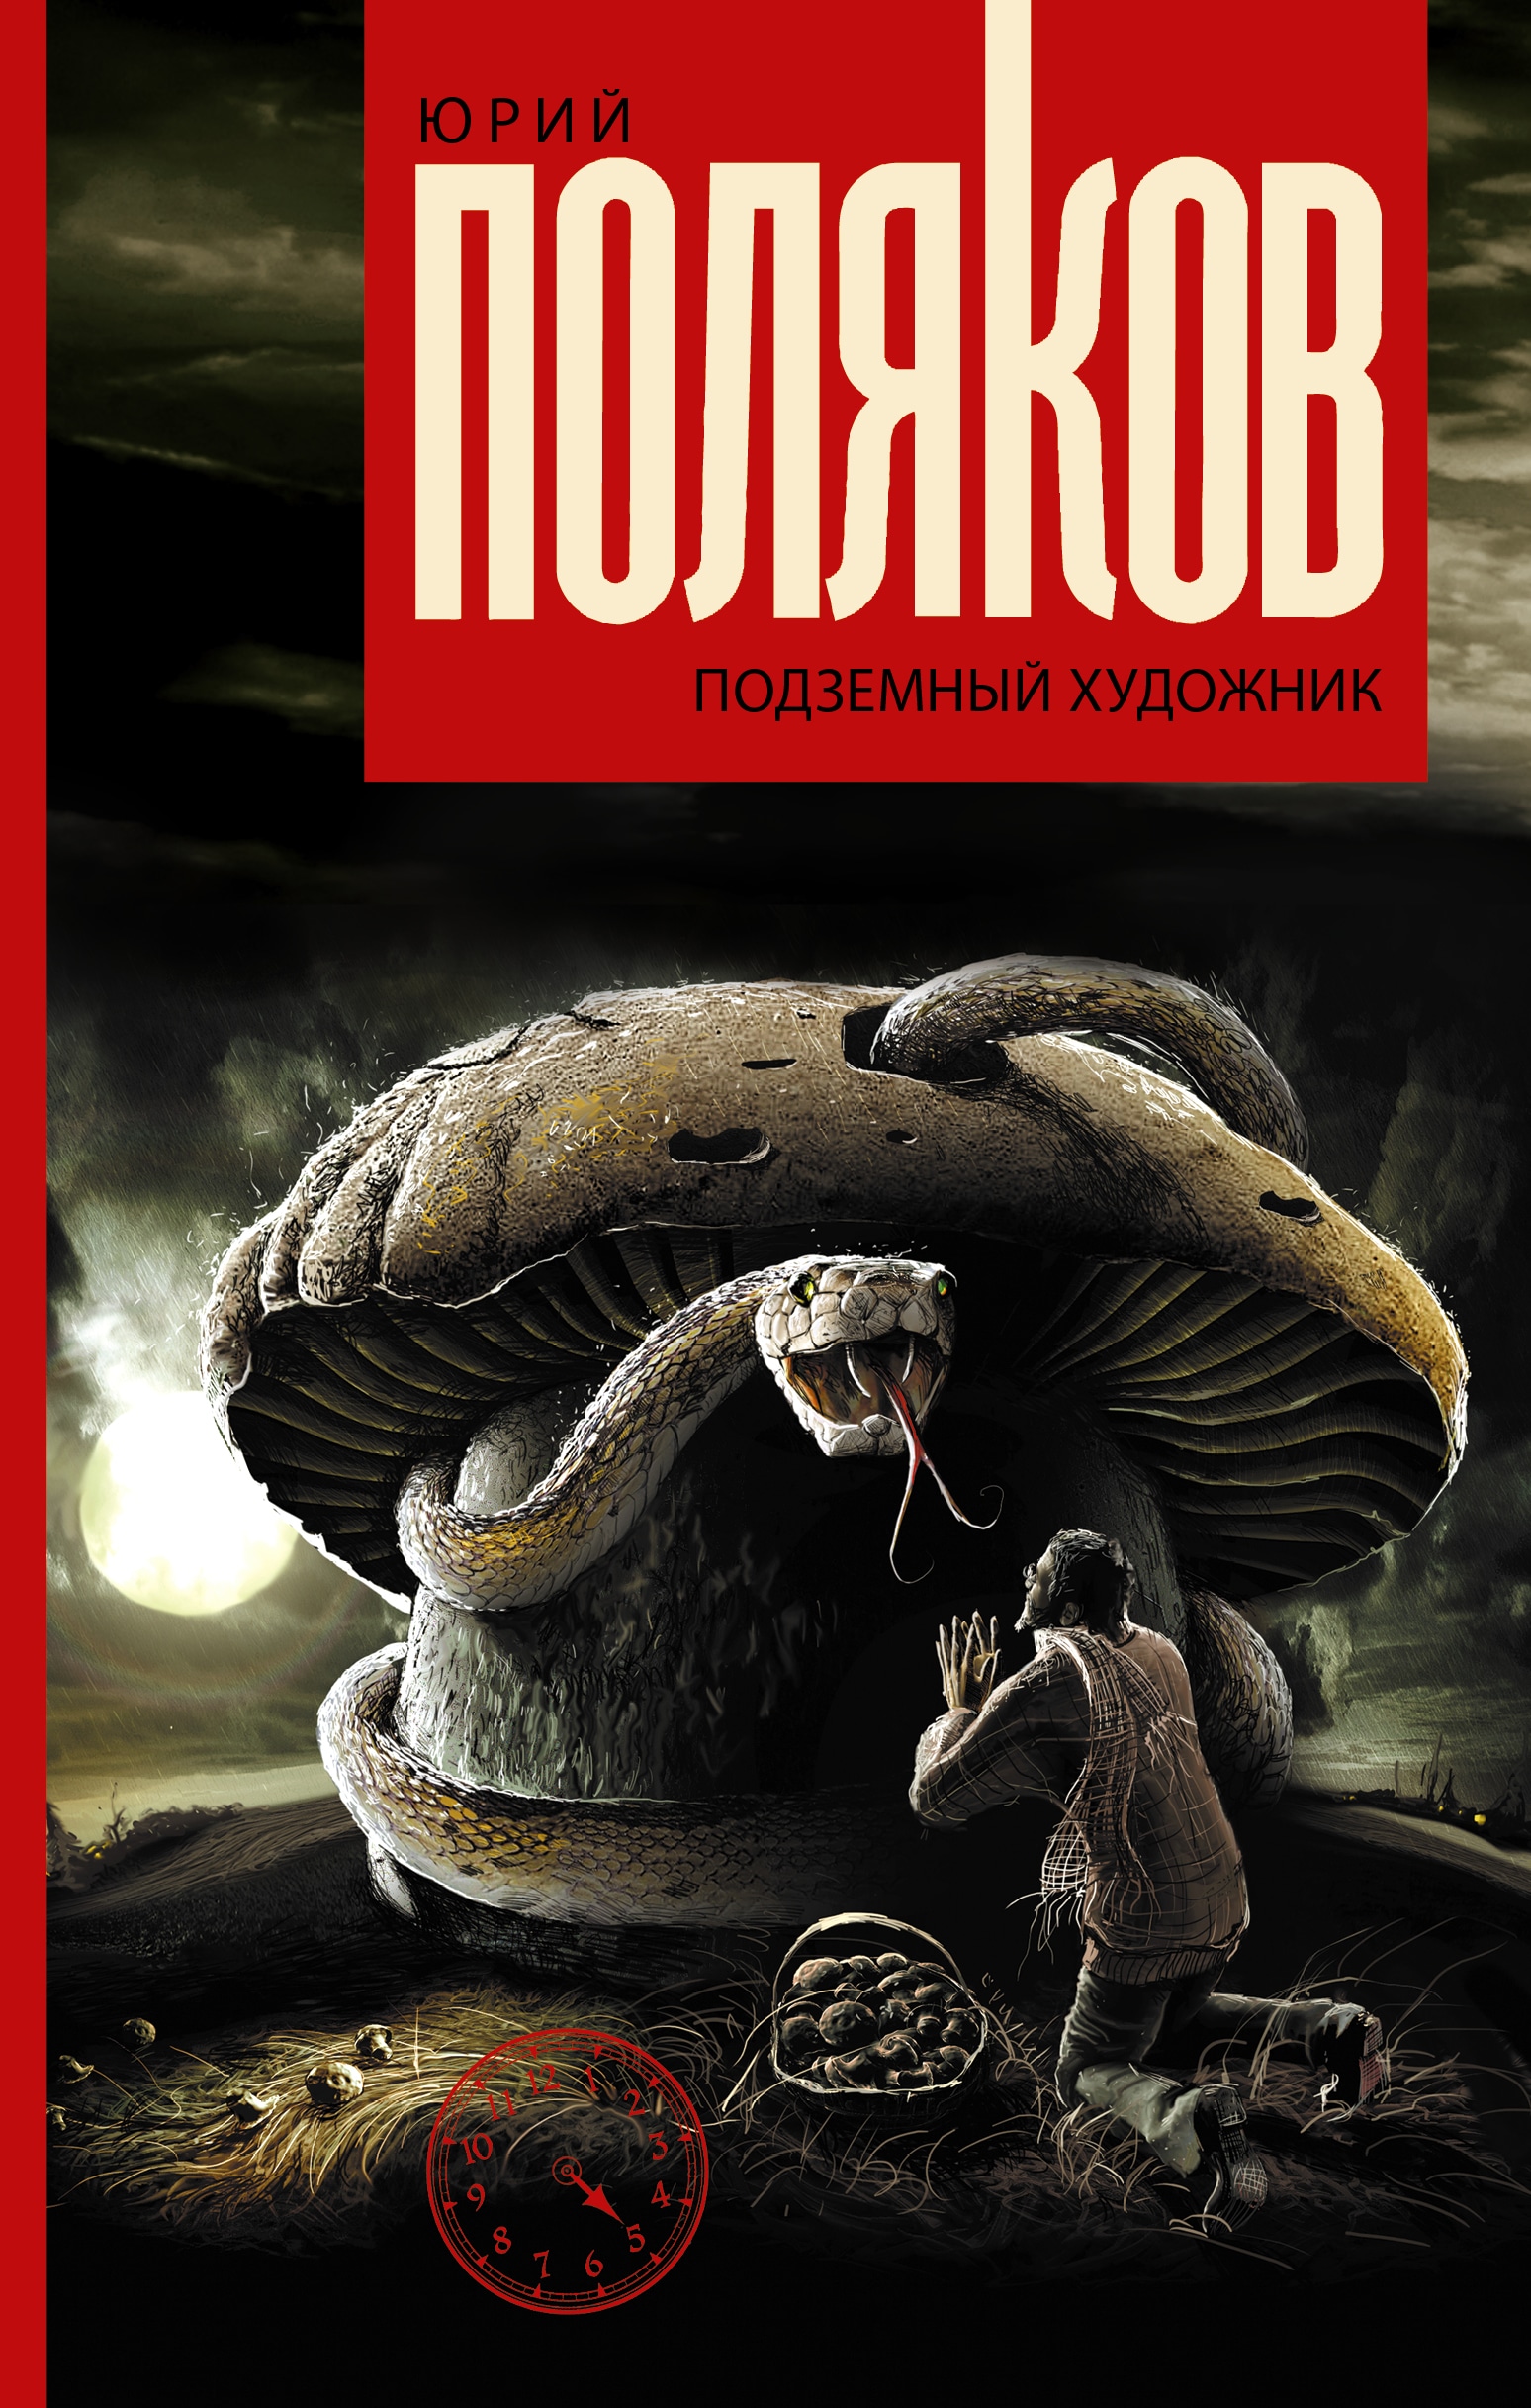 Книга «Подземный художник» Поляков Юрий Михайлович — 16 августа 2019 г.